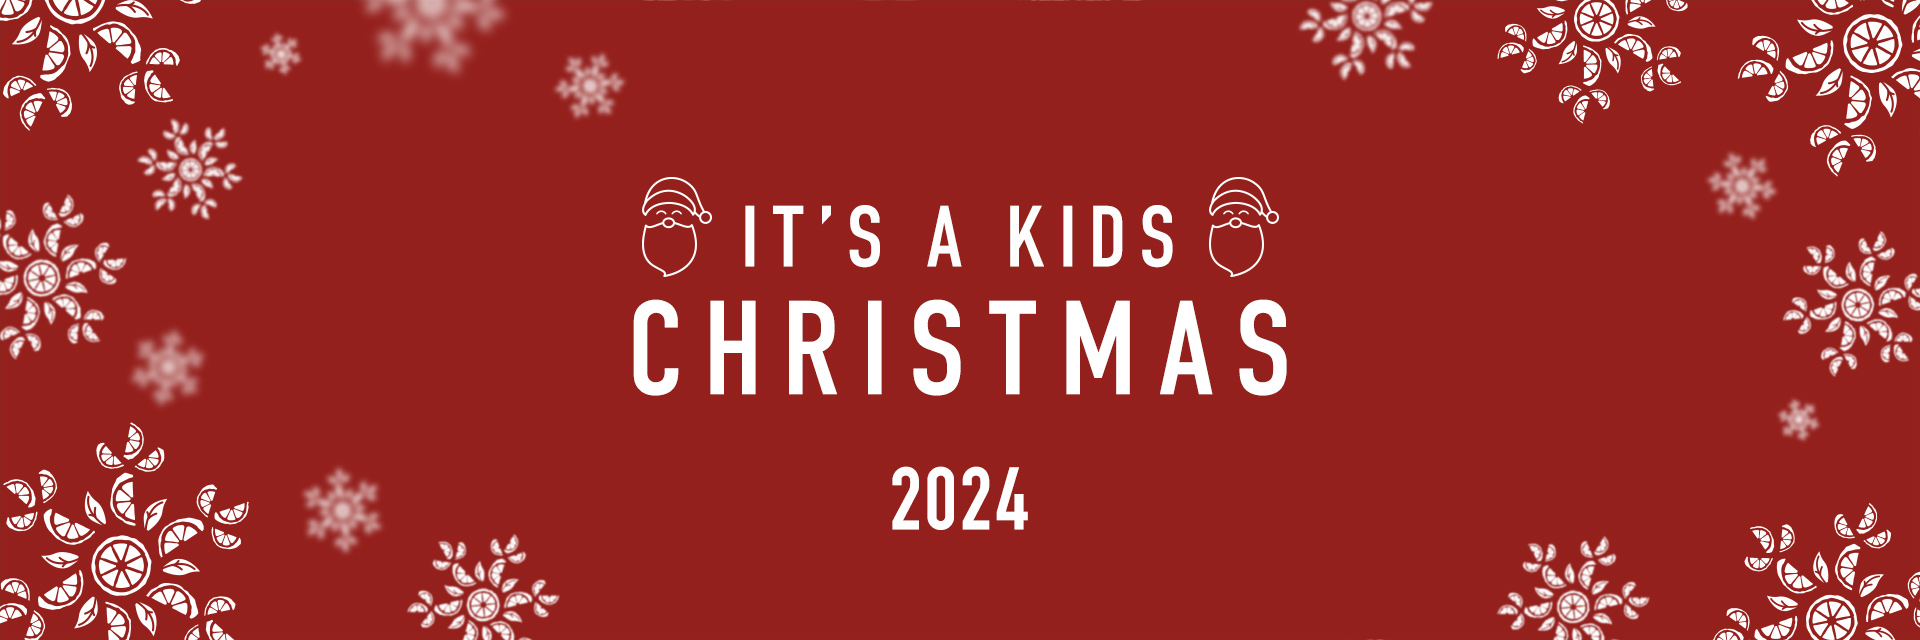 har-2023-christmastakedown-kidschristmas-banner.jpg